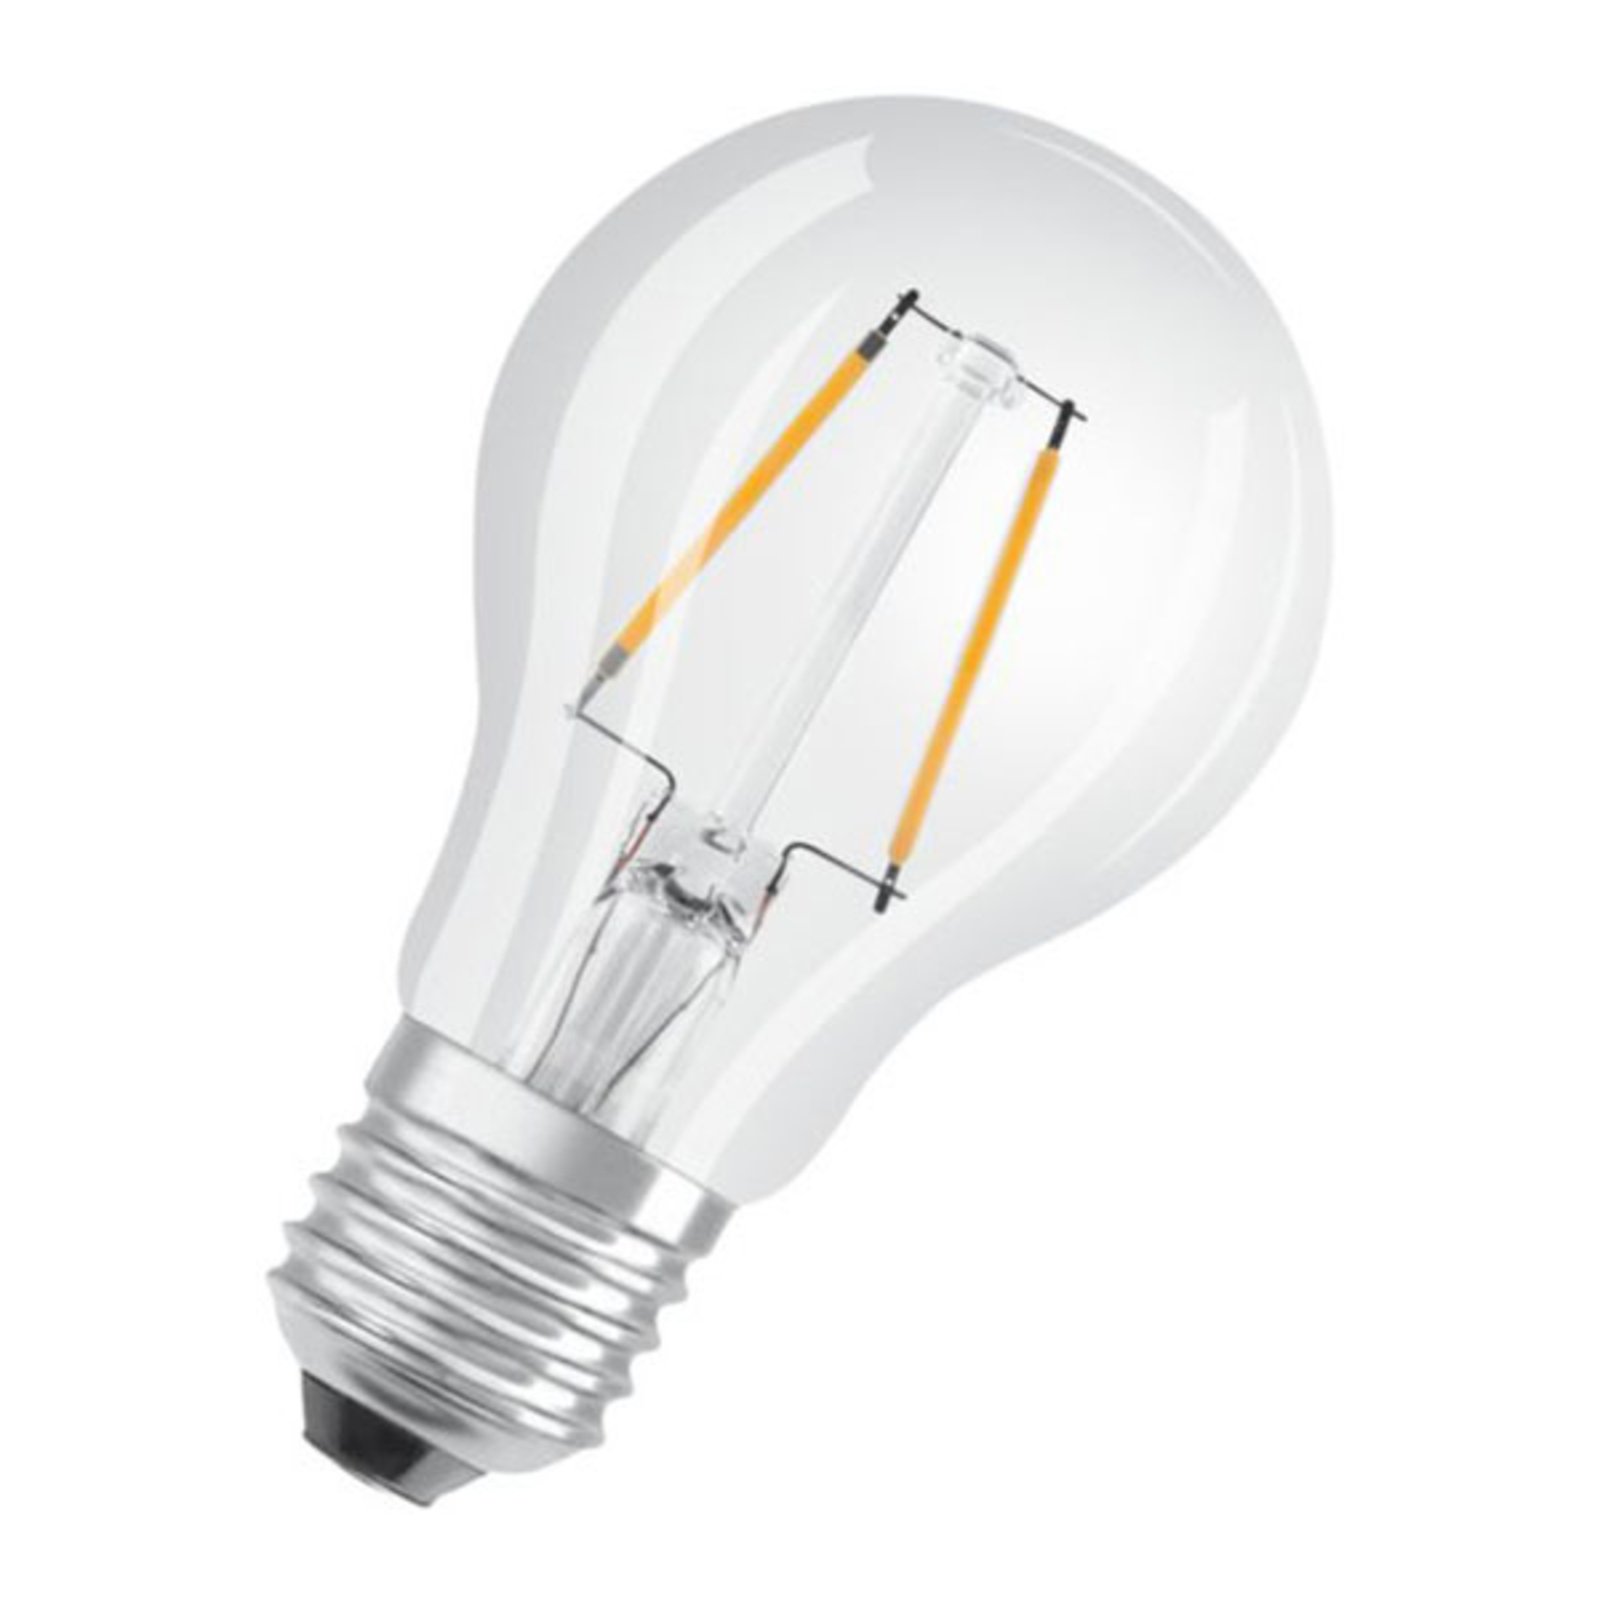 OSRAM Classic A LED bulb E27 2.5 W 2,700 K clear